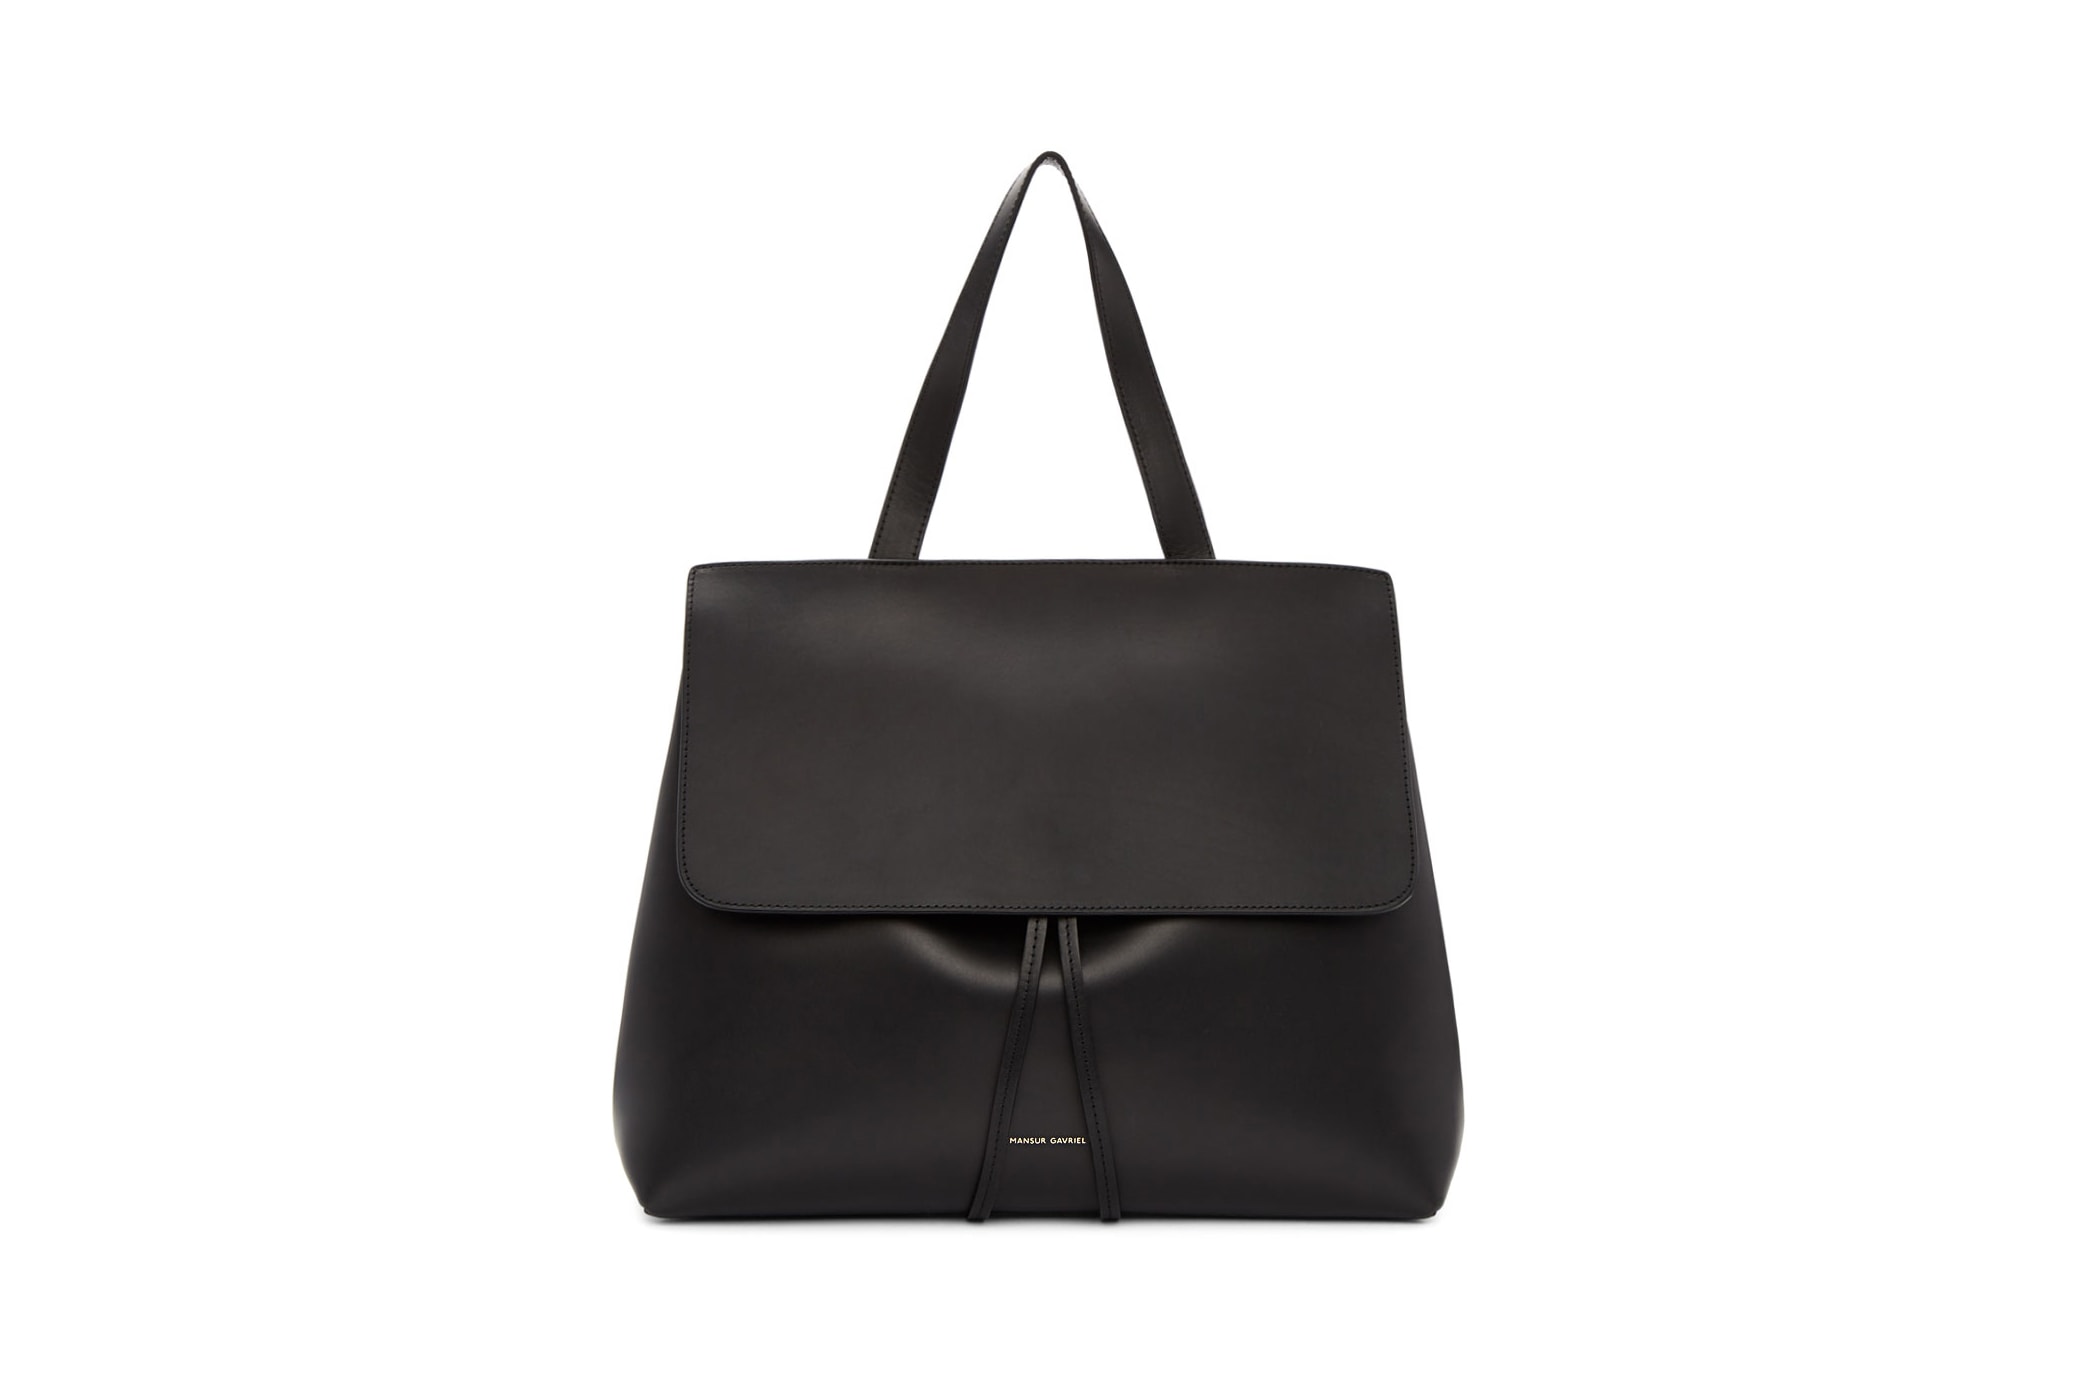 Mansur Gavriel Black Leather Lady Bucket Bag Simple Summer Shoulder Bag